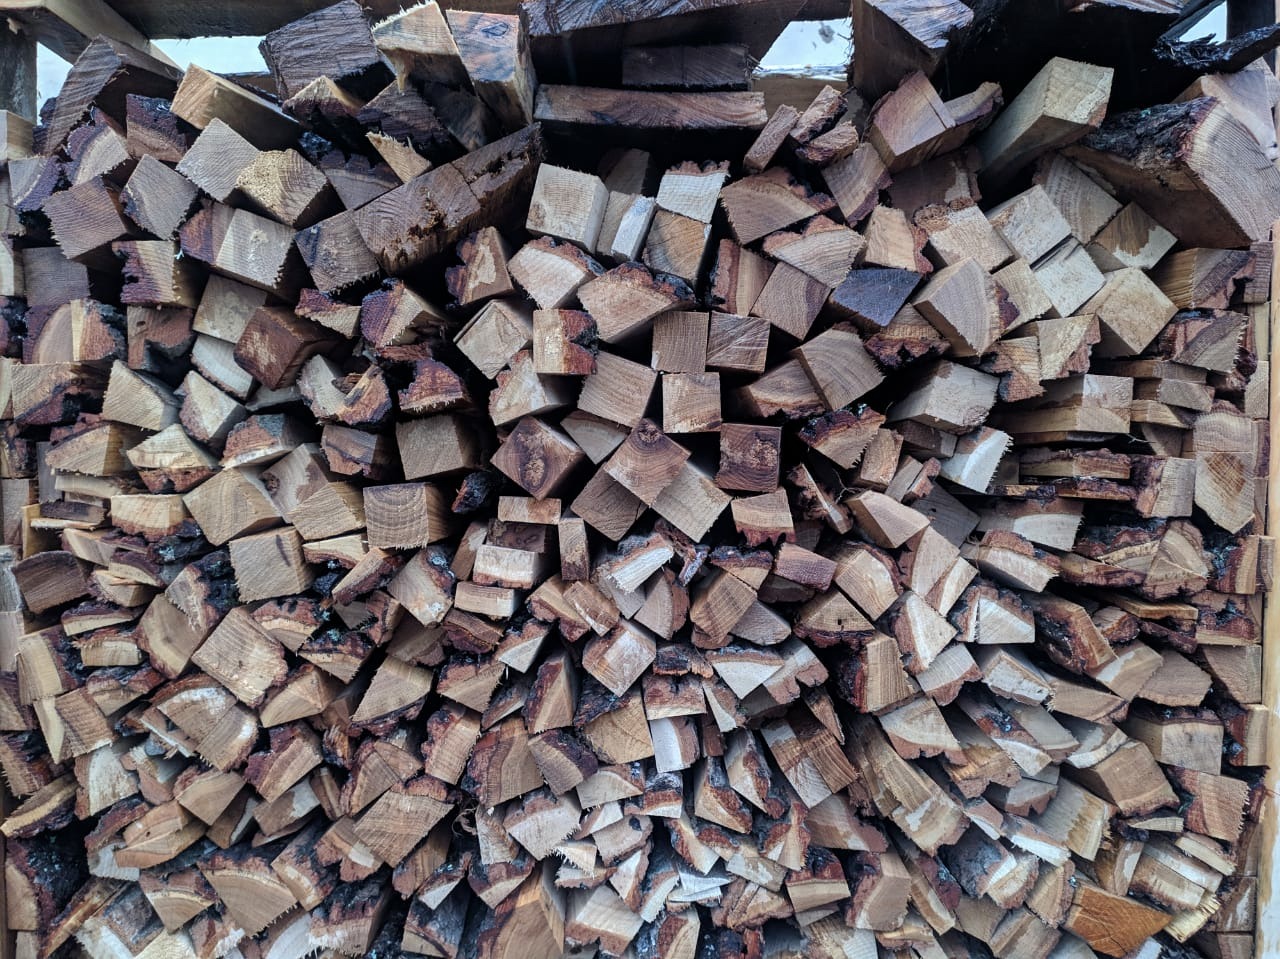 Купить дрова в новосибирске с доставкой. Дрова в сетке. Дрова березовые в сетках. Дрова в сетке ясень. Дрова сухие в сетках.